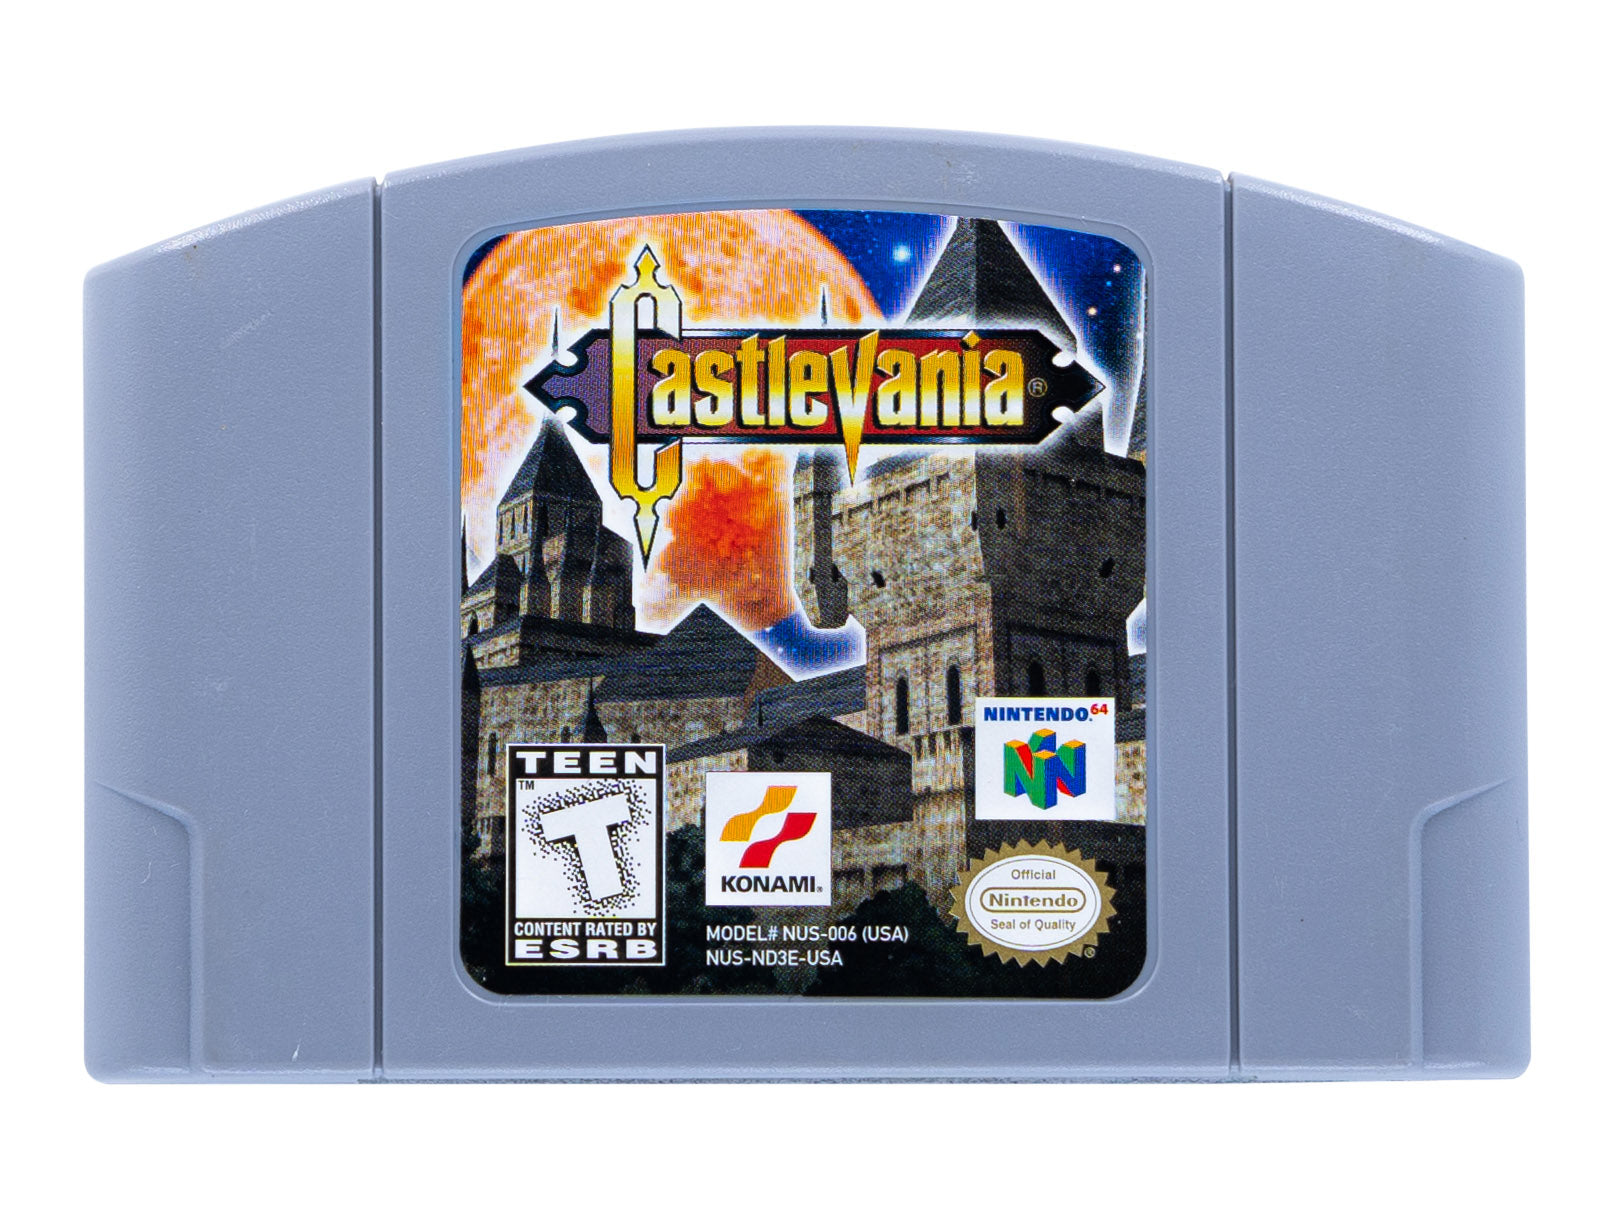 Castlevania Nintendo 64. Кастельвания Нинтендо 64. Nintendo 64 картриджи. Картридж Nintendo 64 Castlevania Legacy of Darkness (Pal).